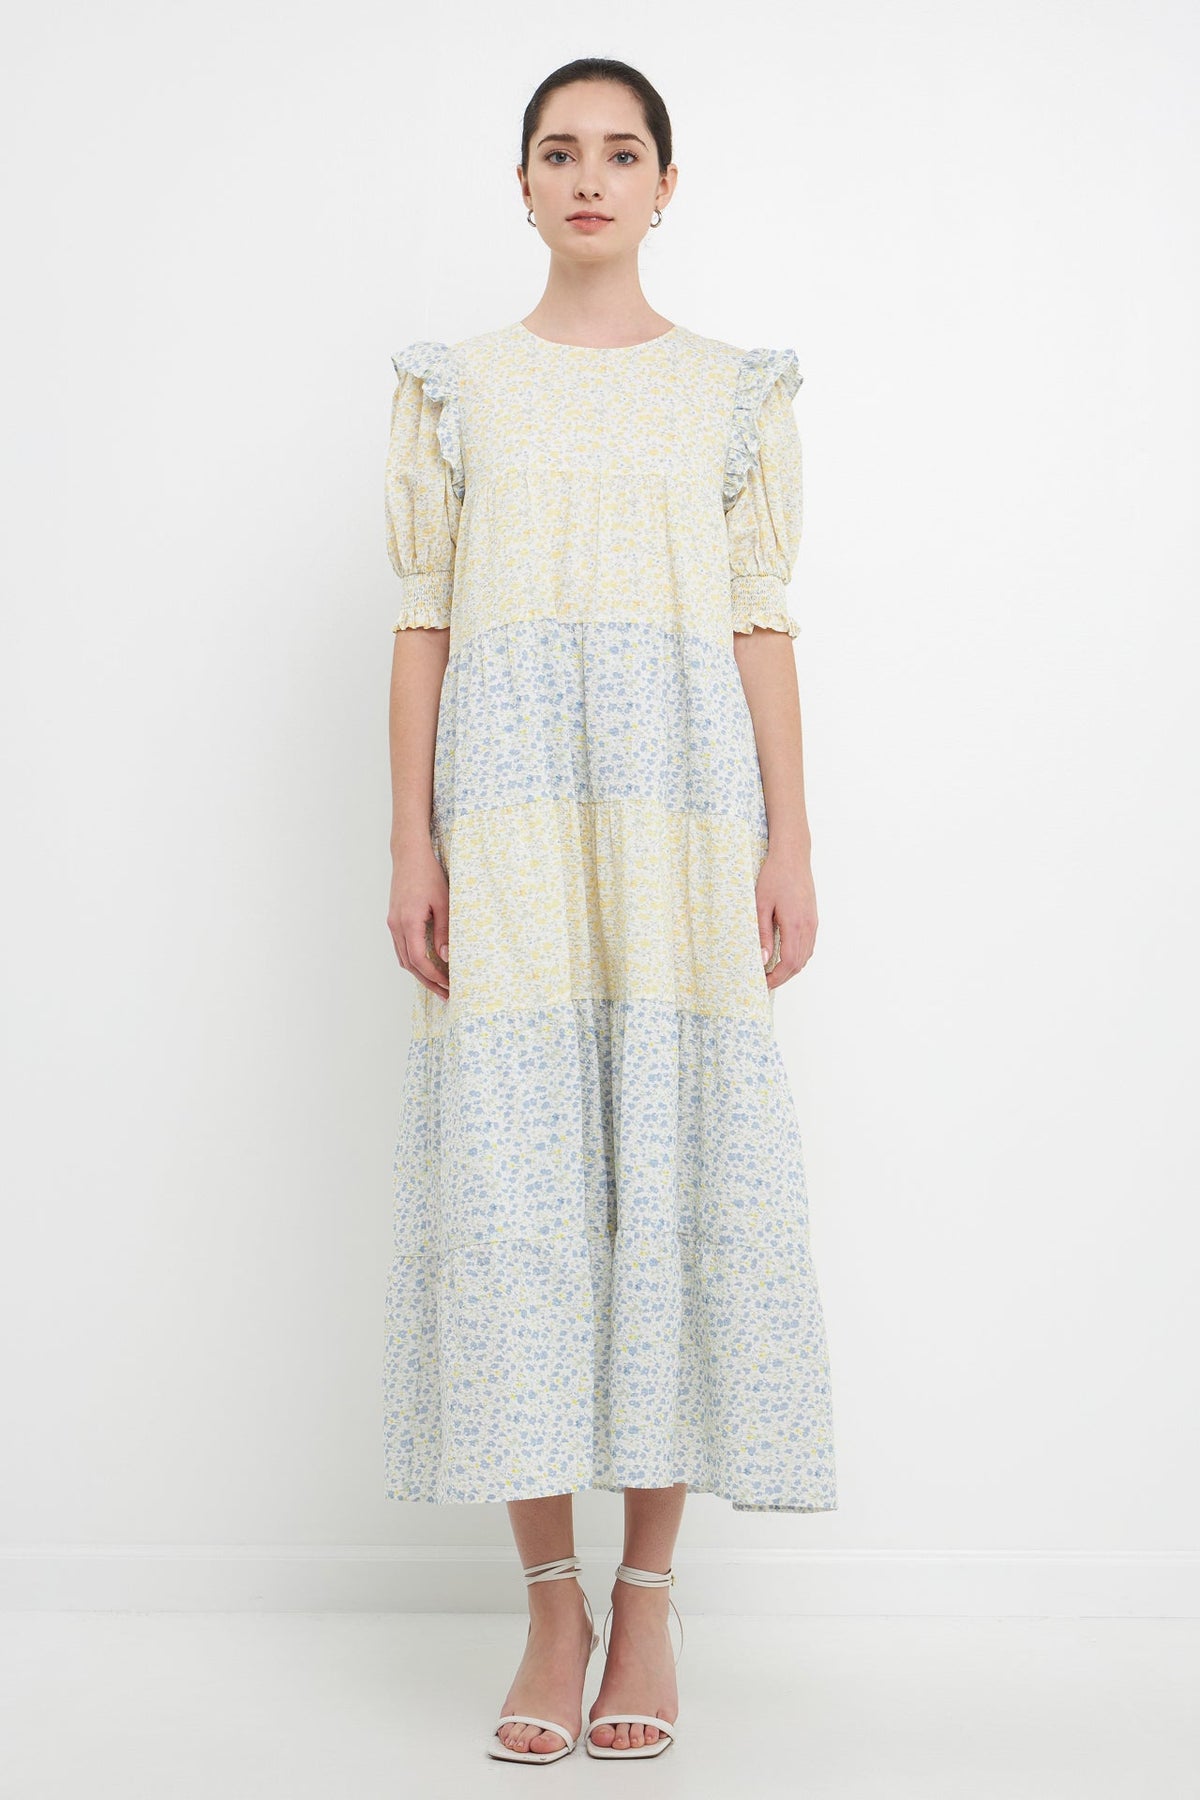 Gingham Bows Twofer Dress (3 Colors) – Megoosta Fashion